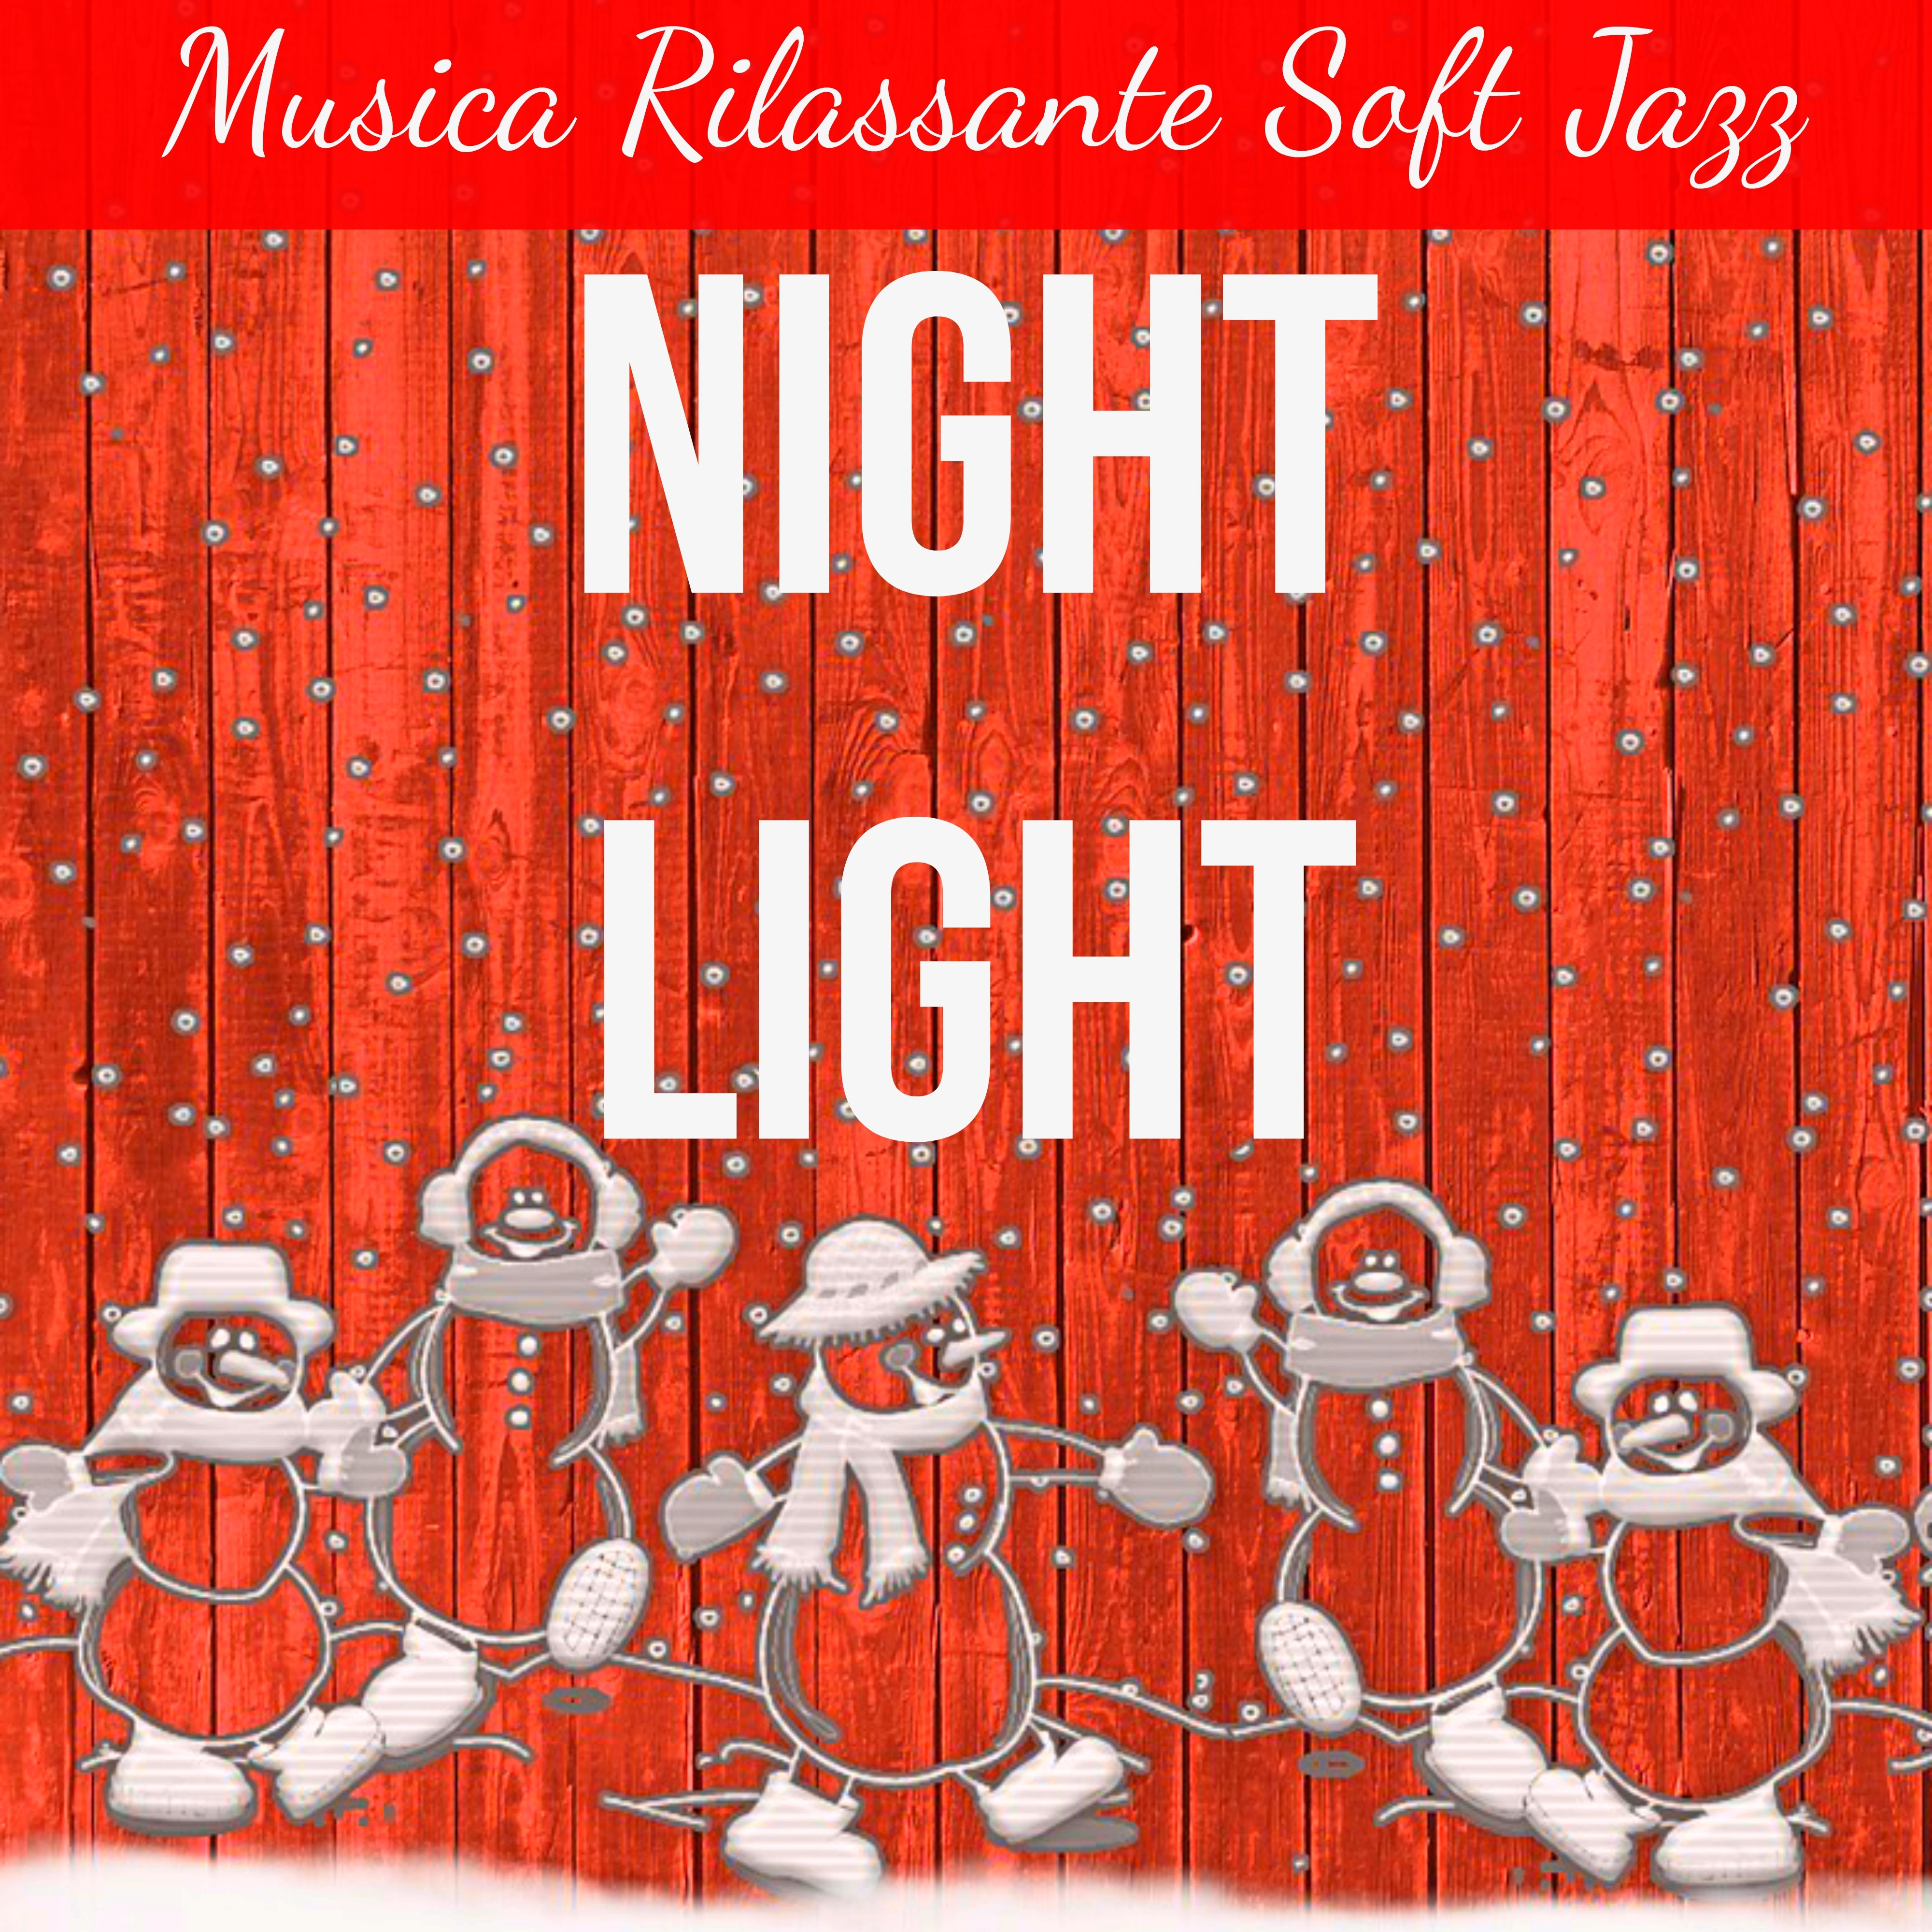 Night Light - Musica Rilassante Soft Jazz per Magico Natale Esercizi Rilassamento Stare Bene con Suoni Calmanti Spirituali New Age